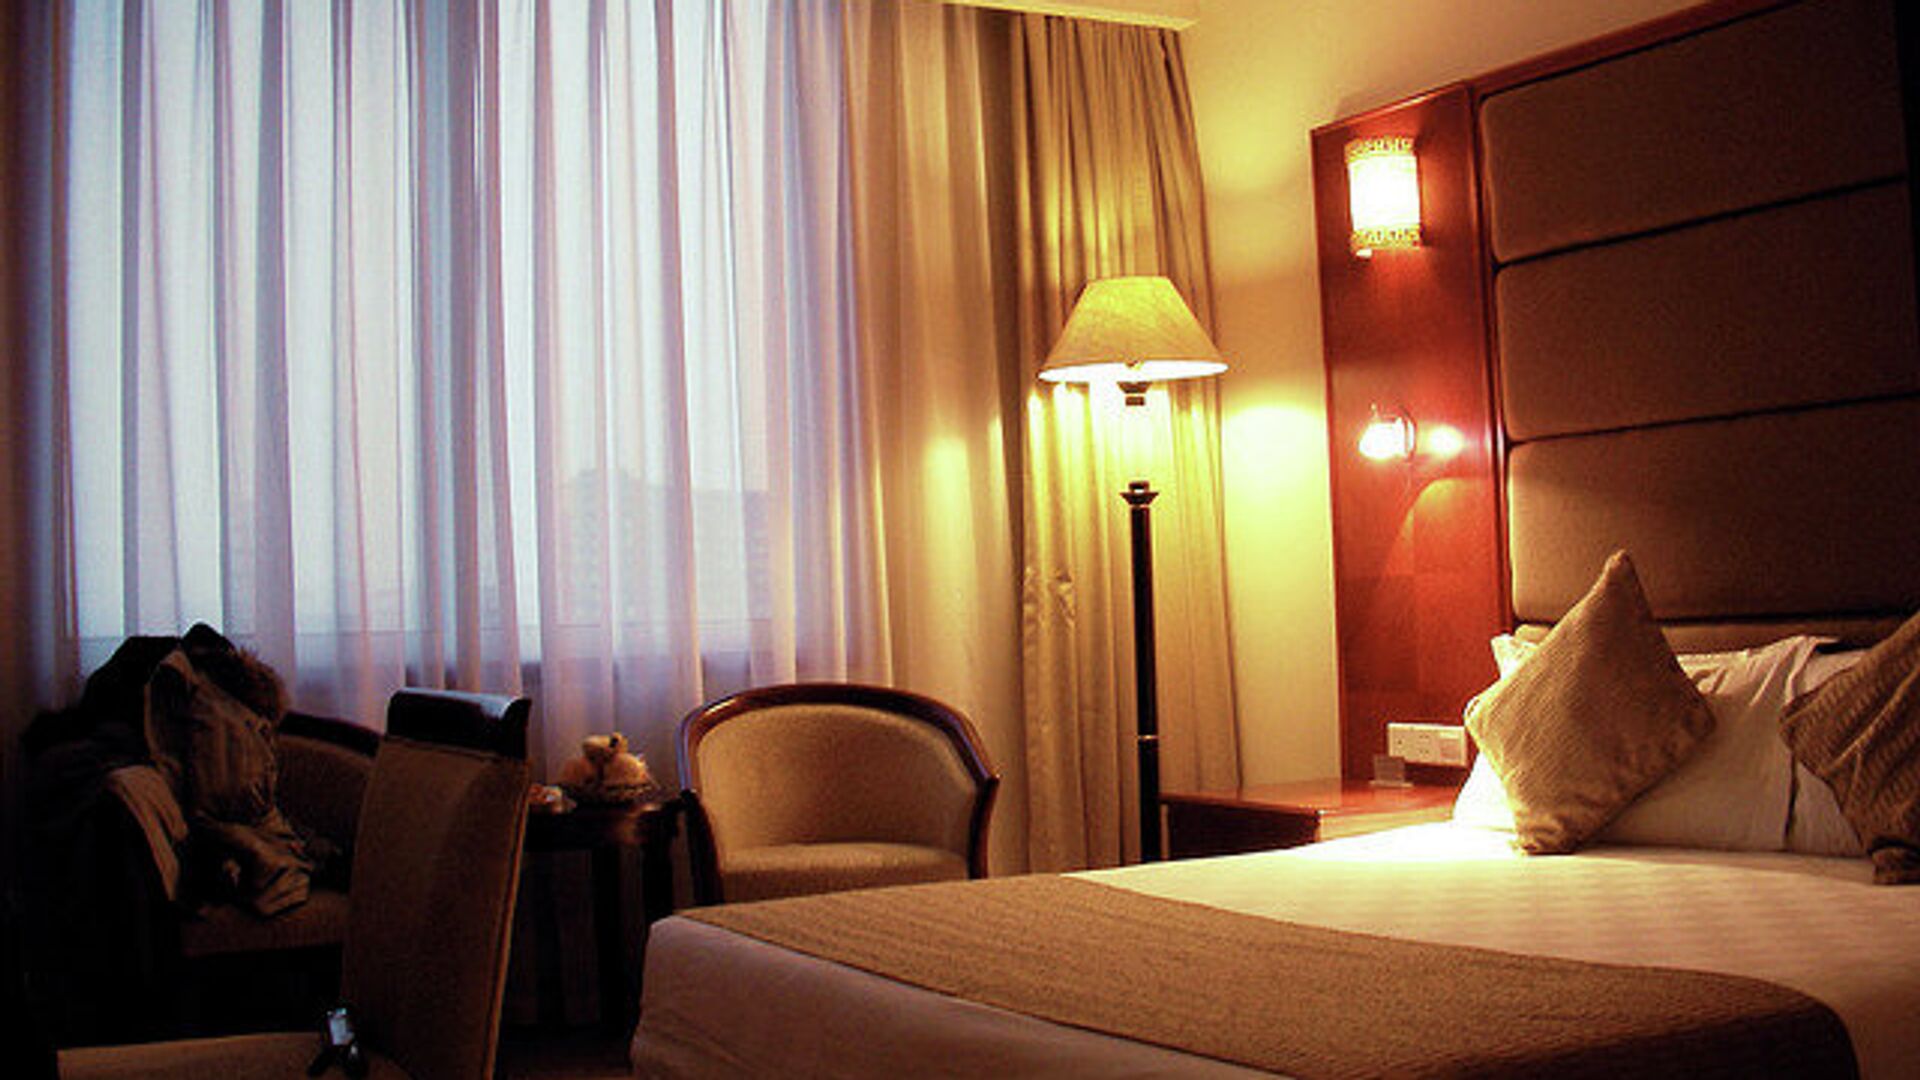 Гостиница обязана. Covid 19 отель. Отель с территорией в МО. Пекин отель Гранд. Светильники из гостиницы Пекин.